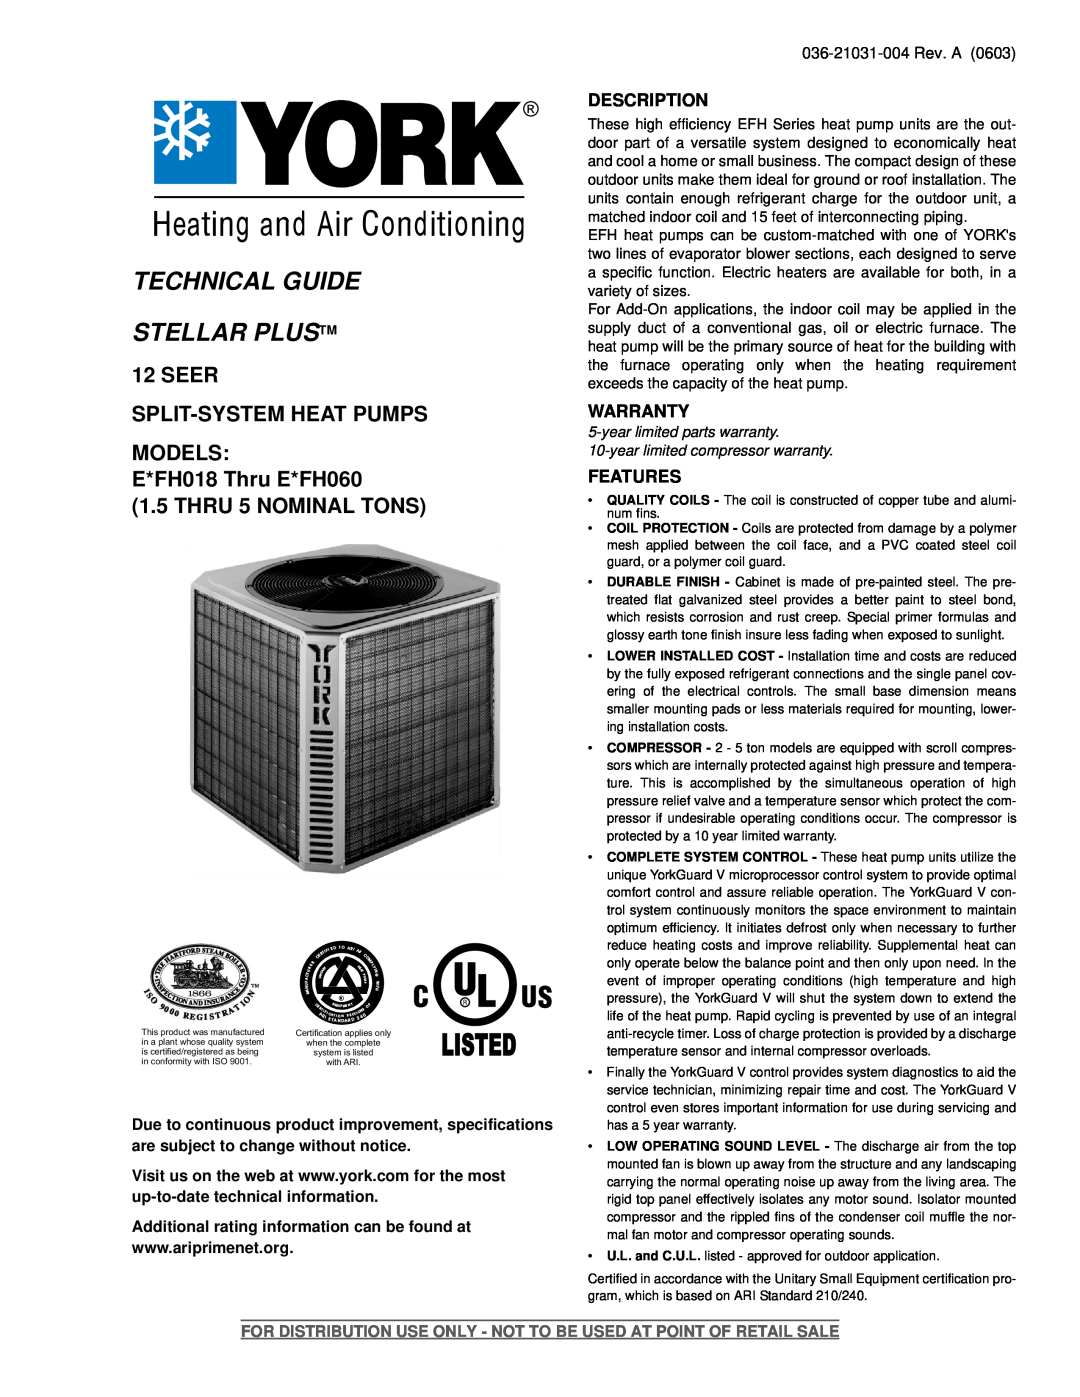 York E*FH060 warranty Description, Warranty, Features, Technical Guide Stellar Plustm, Seer Split-Systemheat Pumps Models 